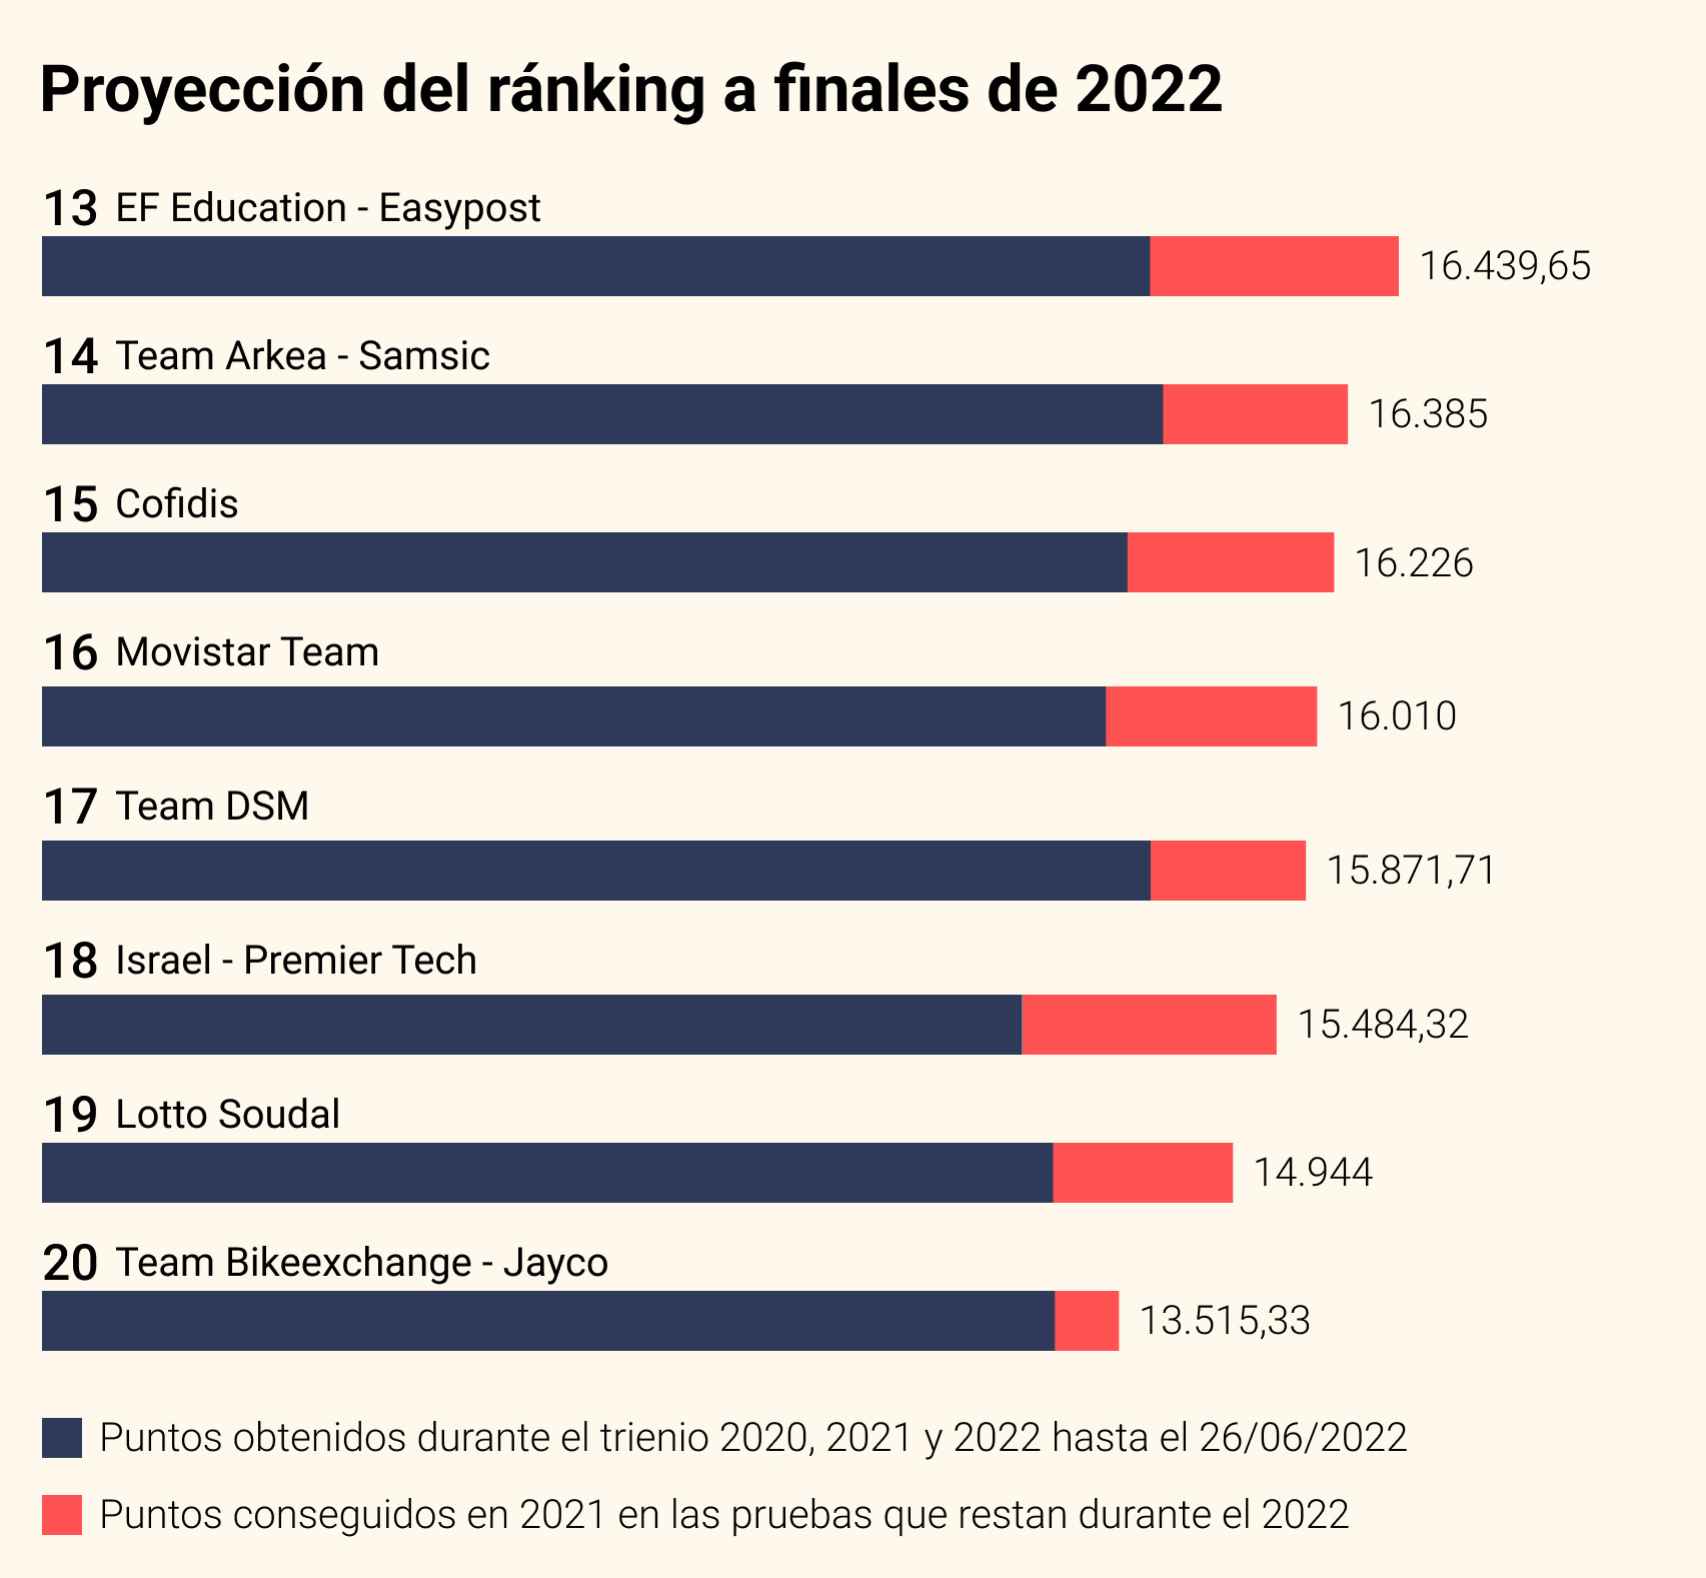 La proyección de la clasificación de equipos de la UCI al final del 2022 con los puntos sumados en 2021 en las pruebas que restan de esta temporada.